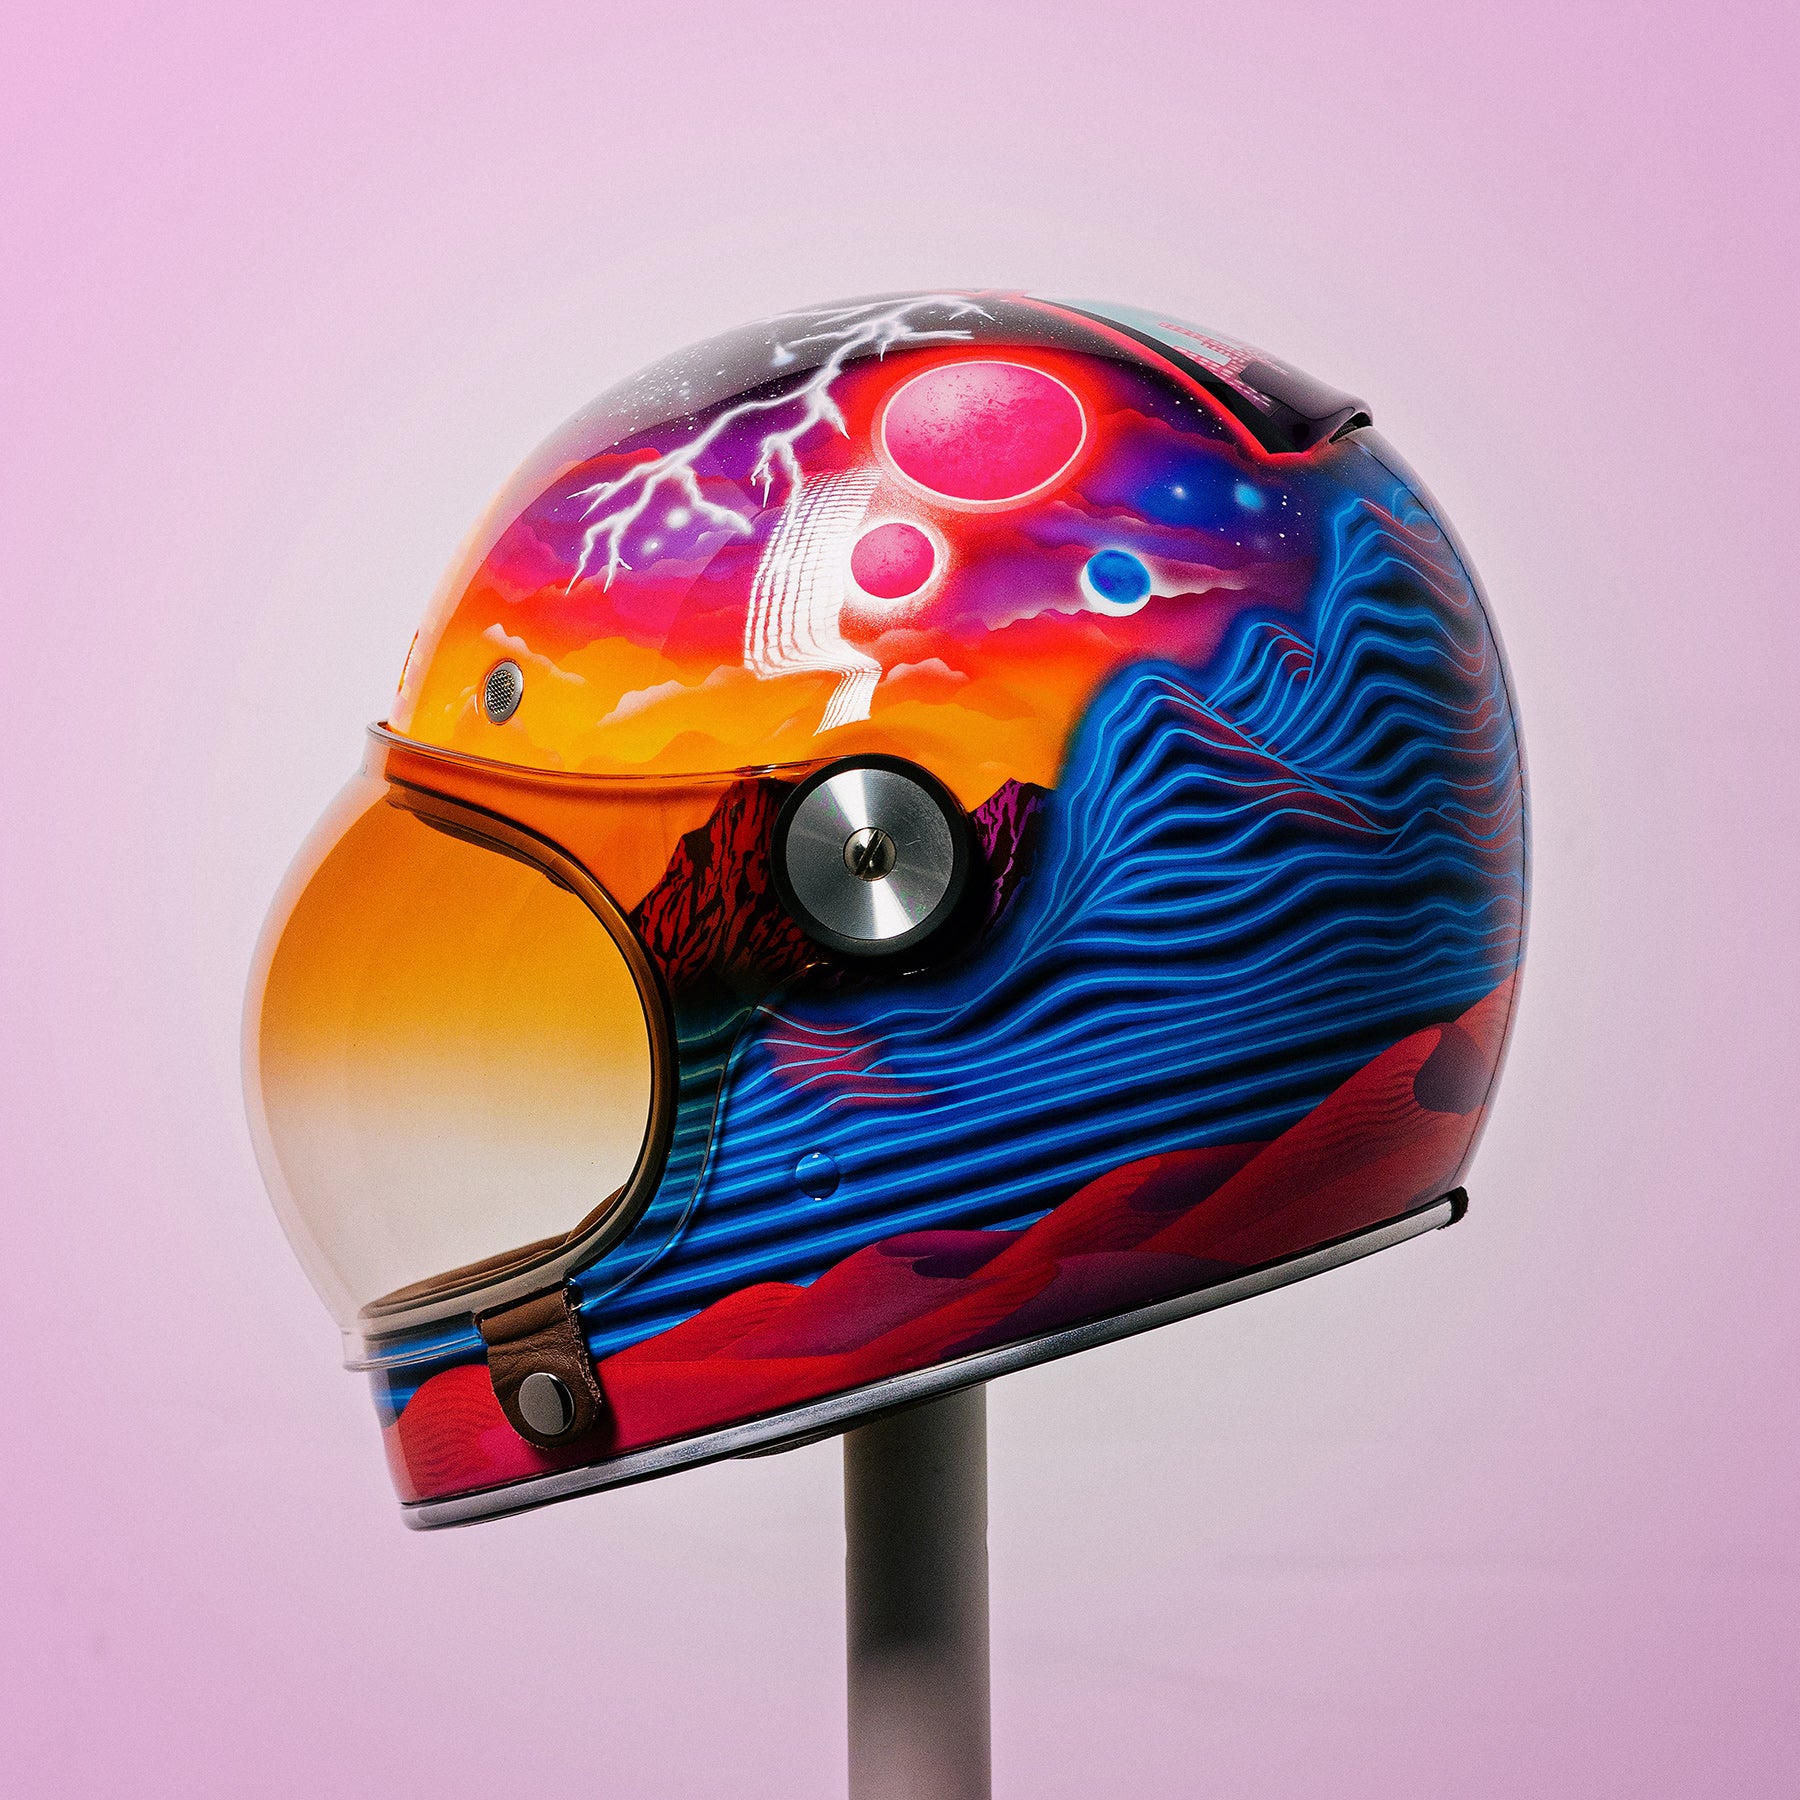 Trippy Ten helmet art show Pittsburgh Glory Daze motorcycle show Bell Helmets Jasmin Skulltits